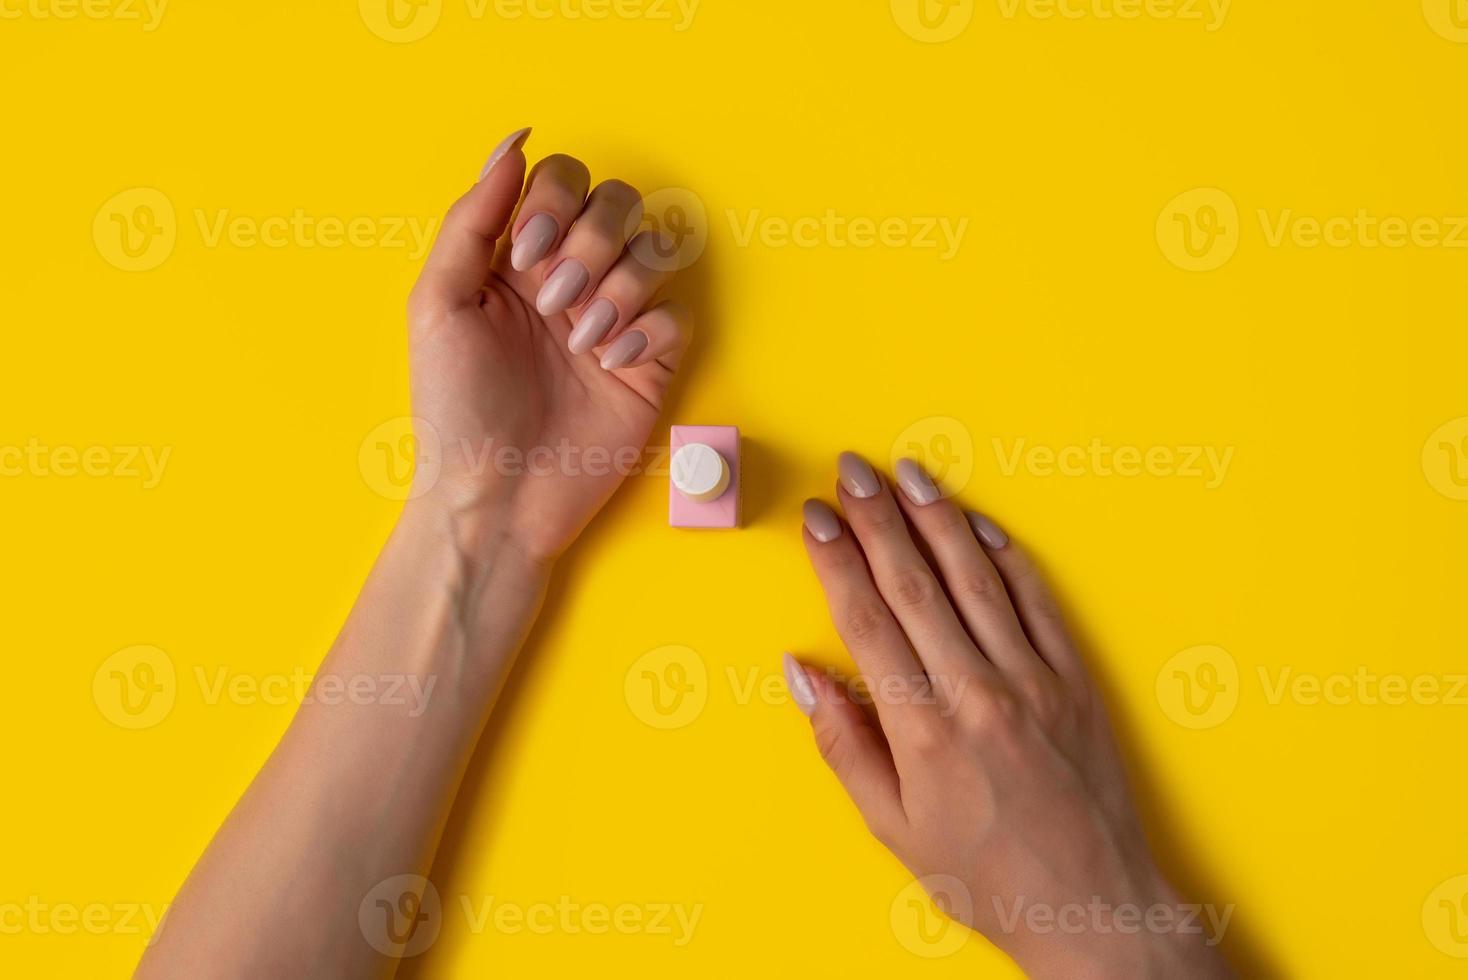 vernis gel de couleur rose et mains avec manucure sur fond jaune, vue de dessus photo